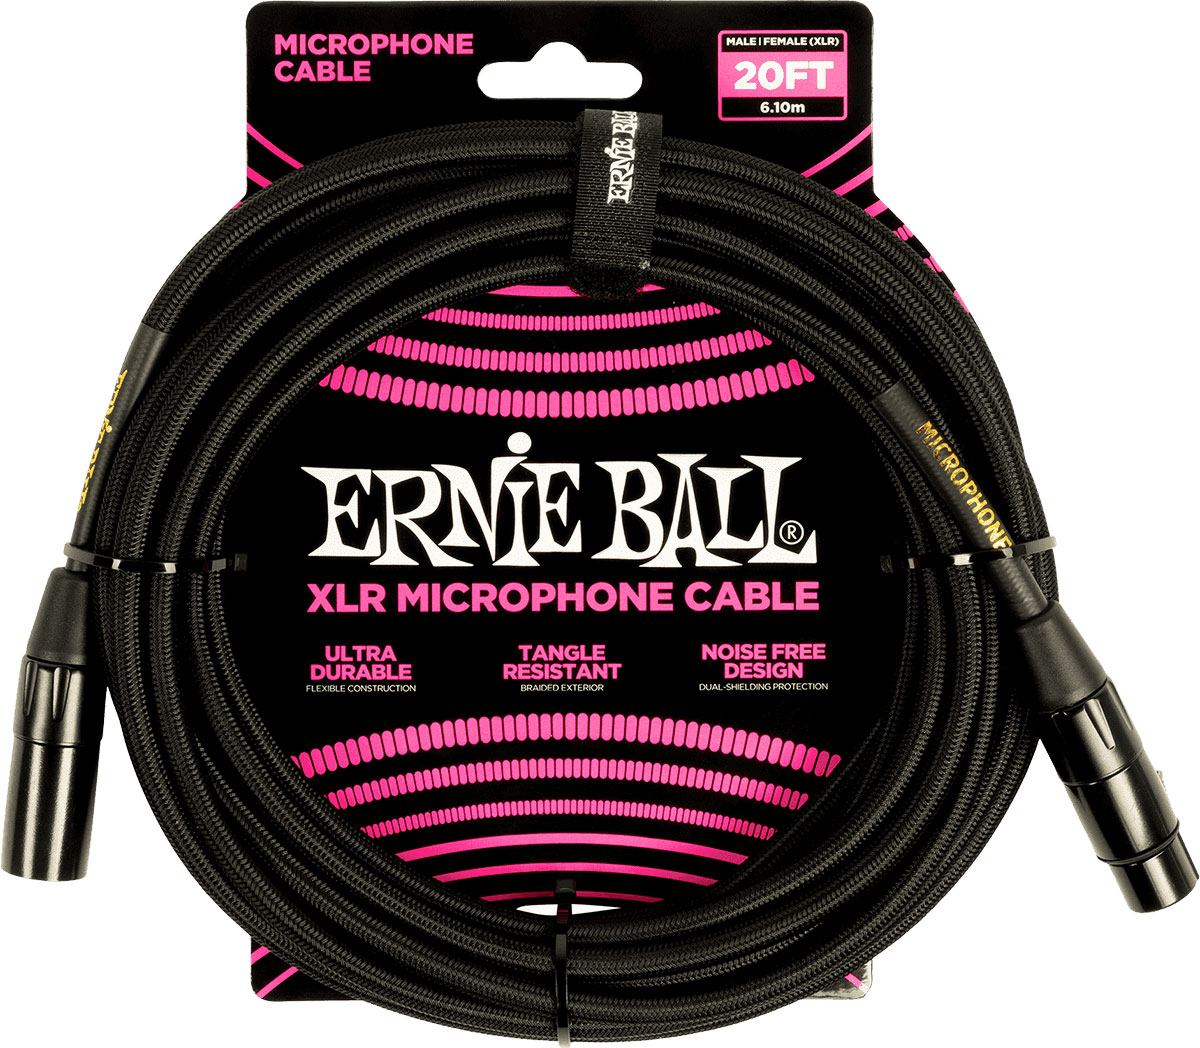 ERNIE BALL MICROPHONE CABLES XLR MALE/XLR FEMALE 6M BLACK